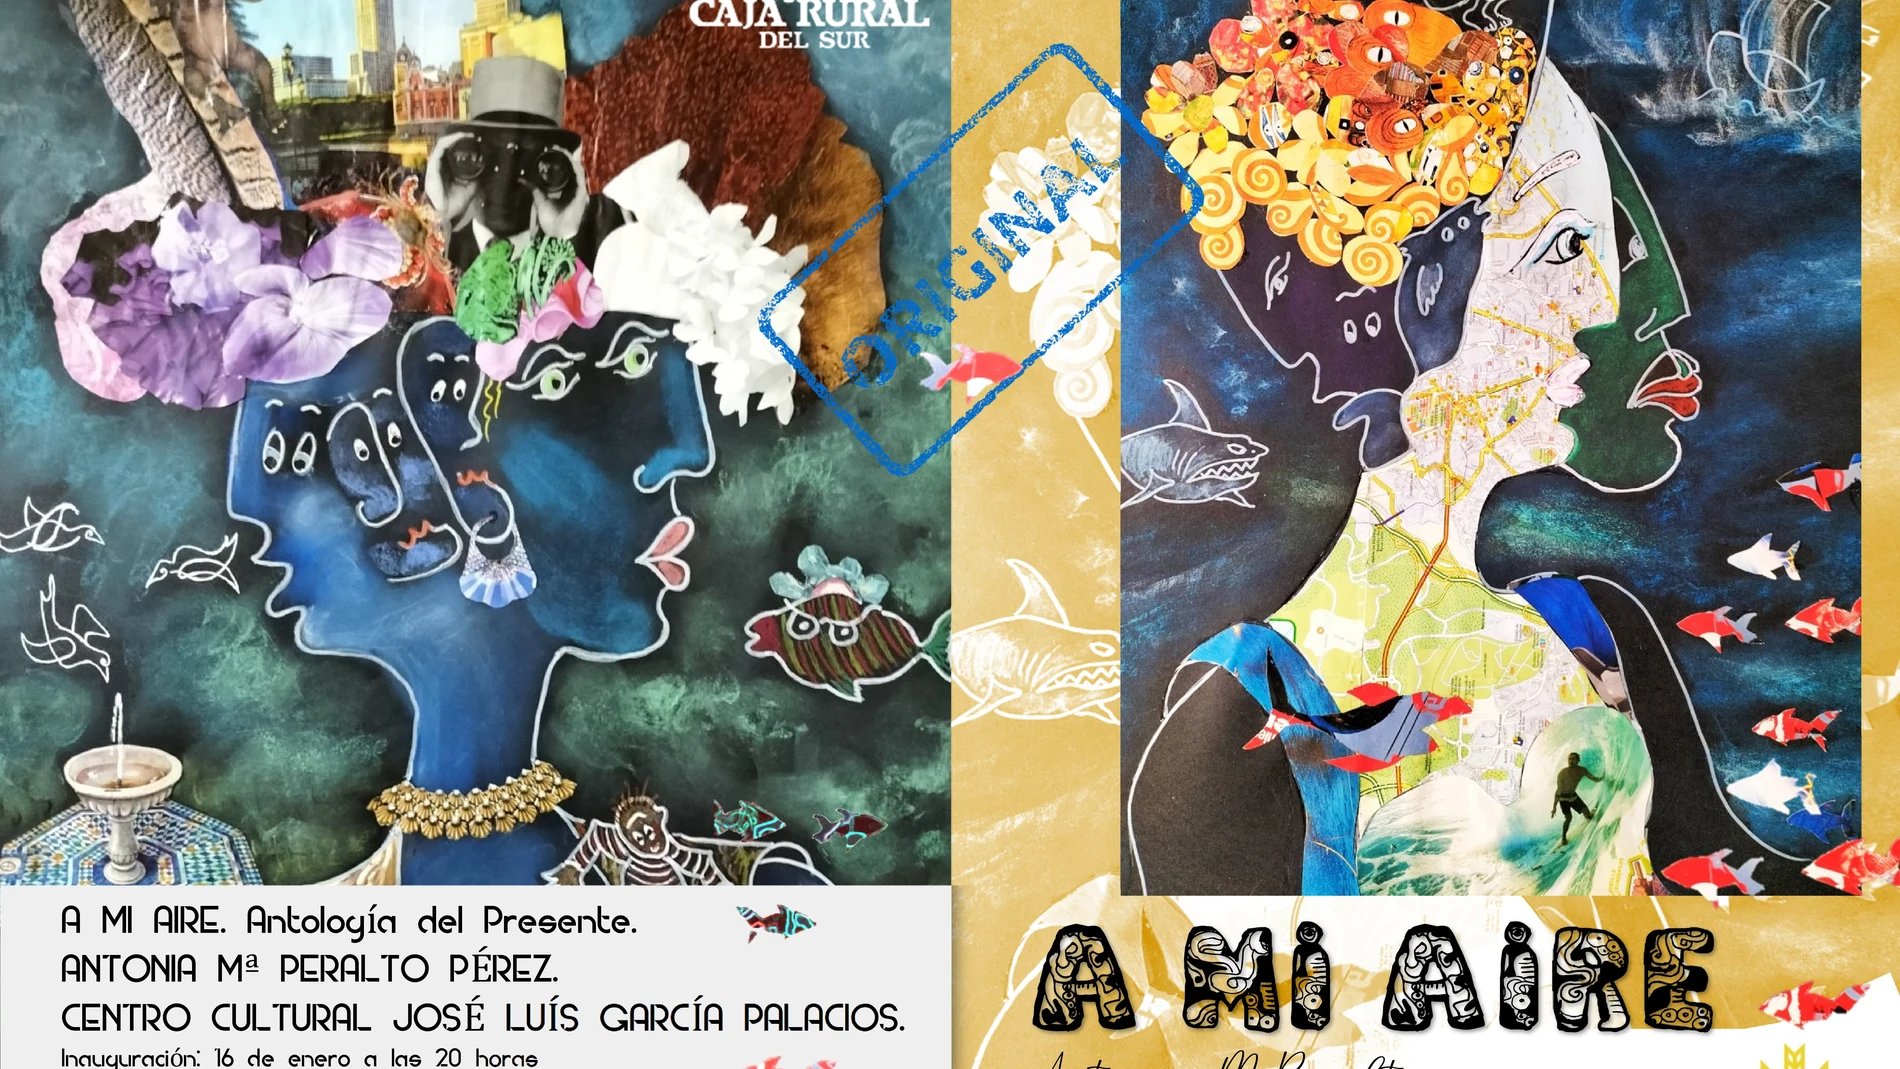 Cartel anunciador de la muestra de Antonia María Peralto